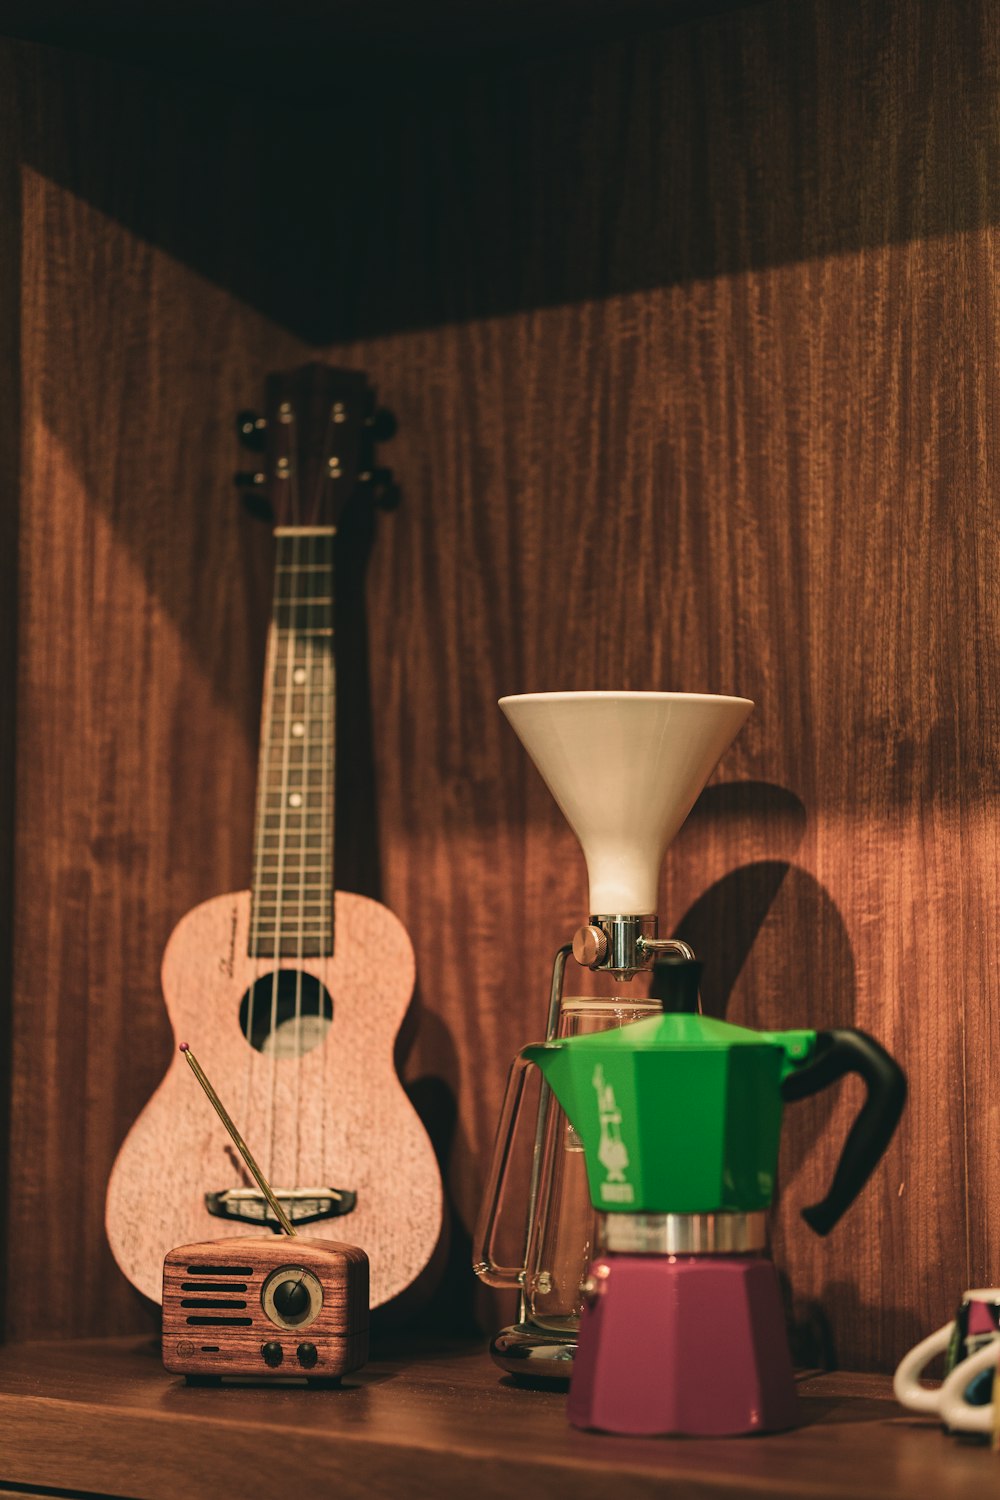 guitare acoustique brune à côté d'une tasse en plastique verte photo –  Photo Loisirs Gratuite sur Unsplash